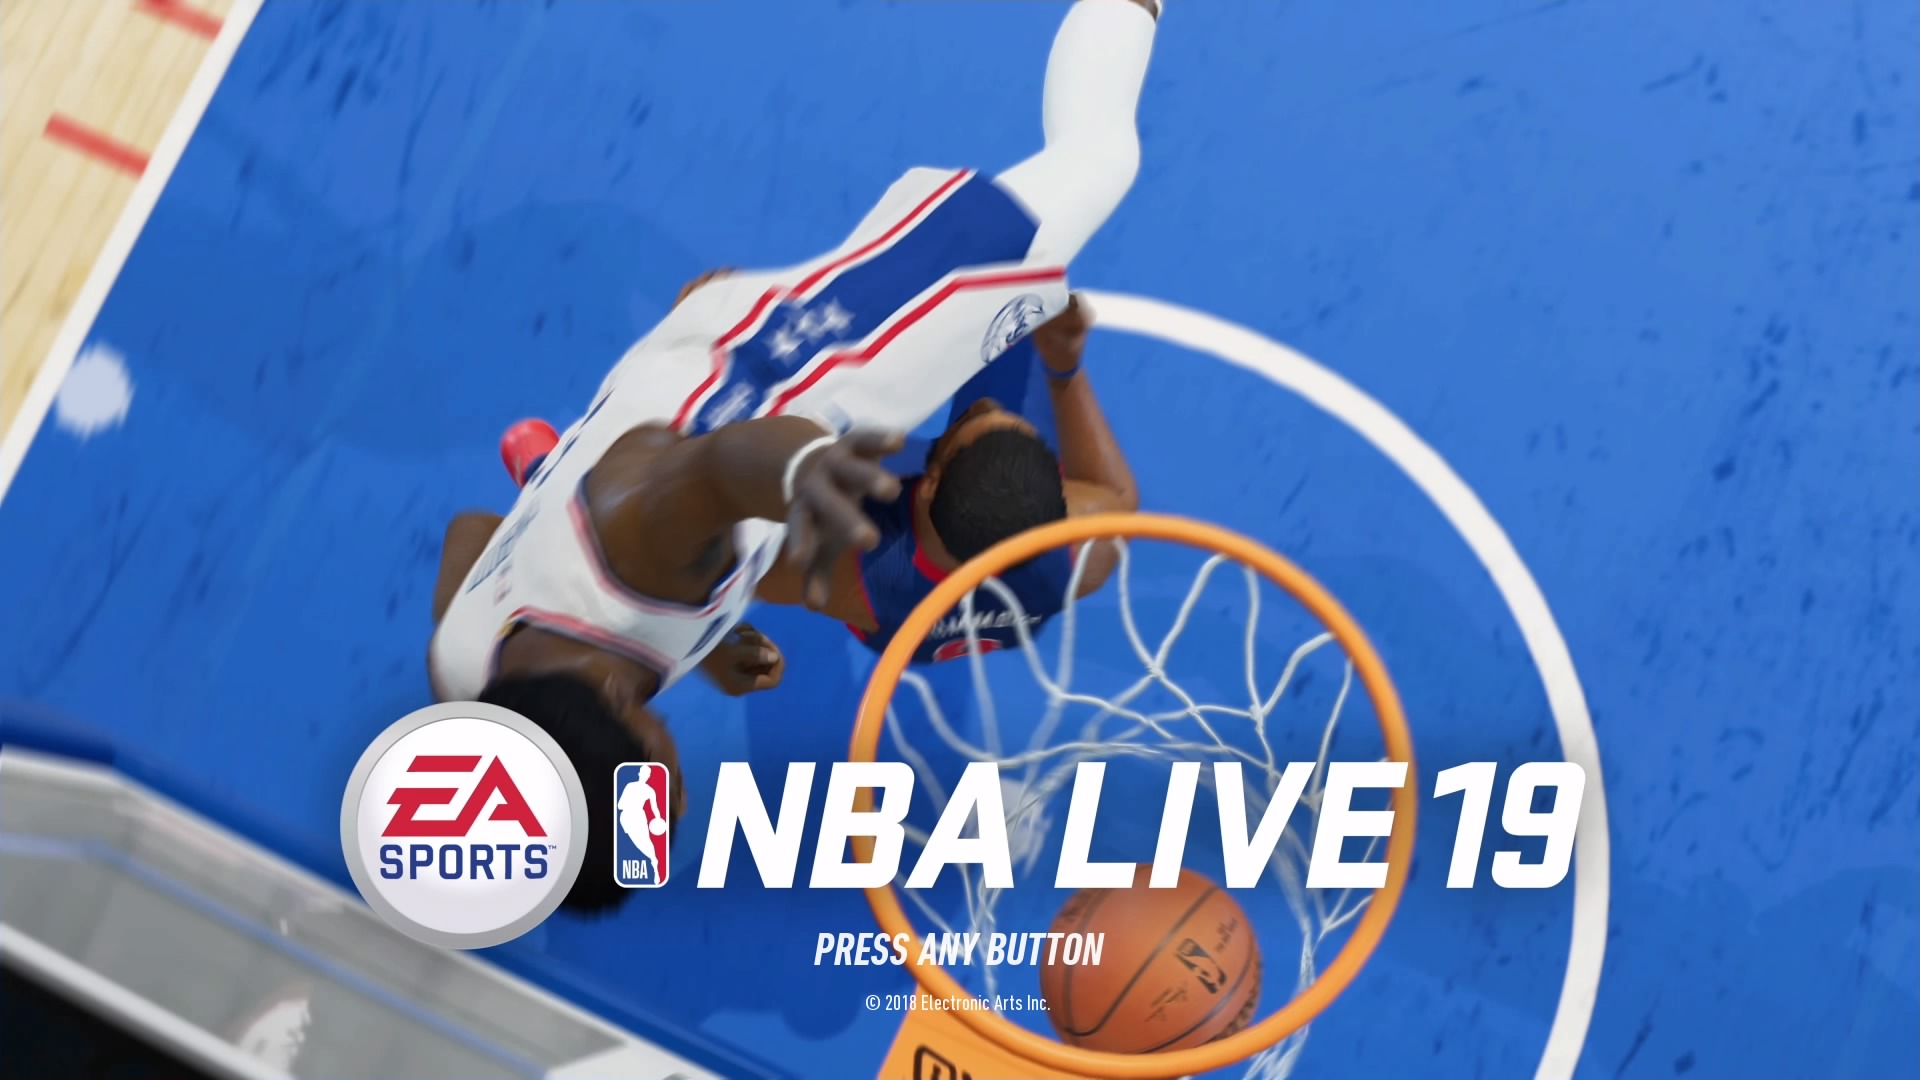 Análise - NBA Live 19